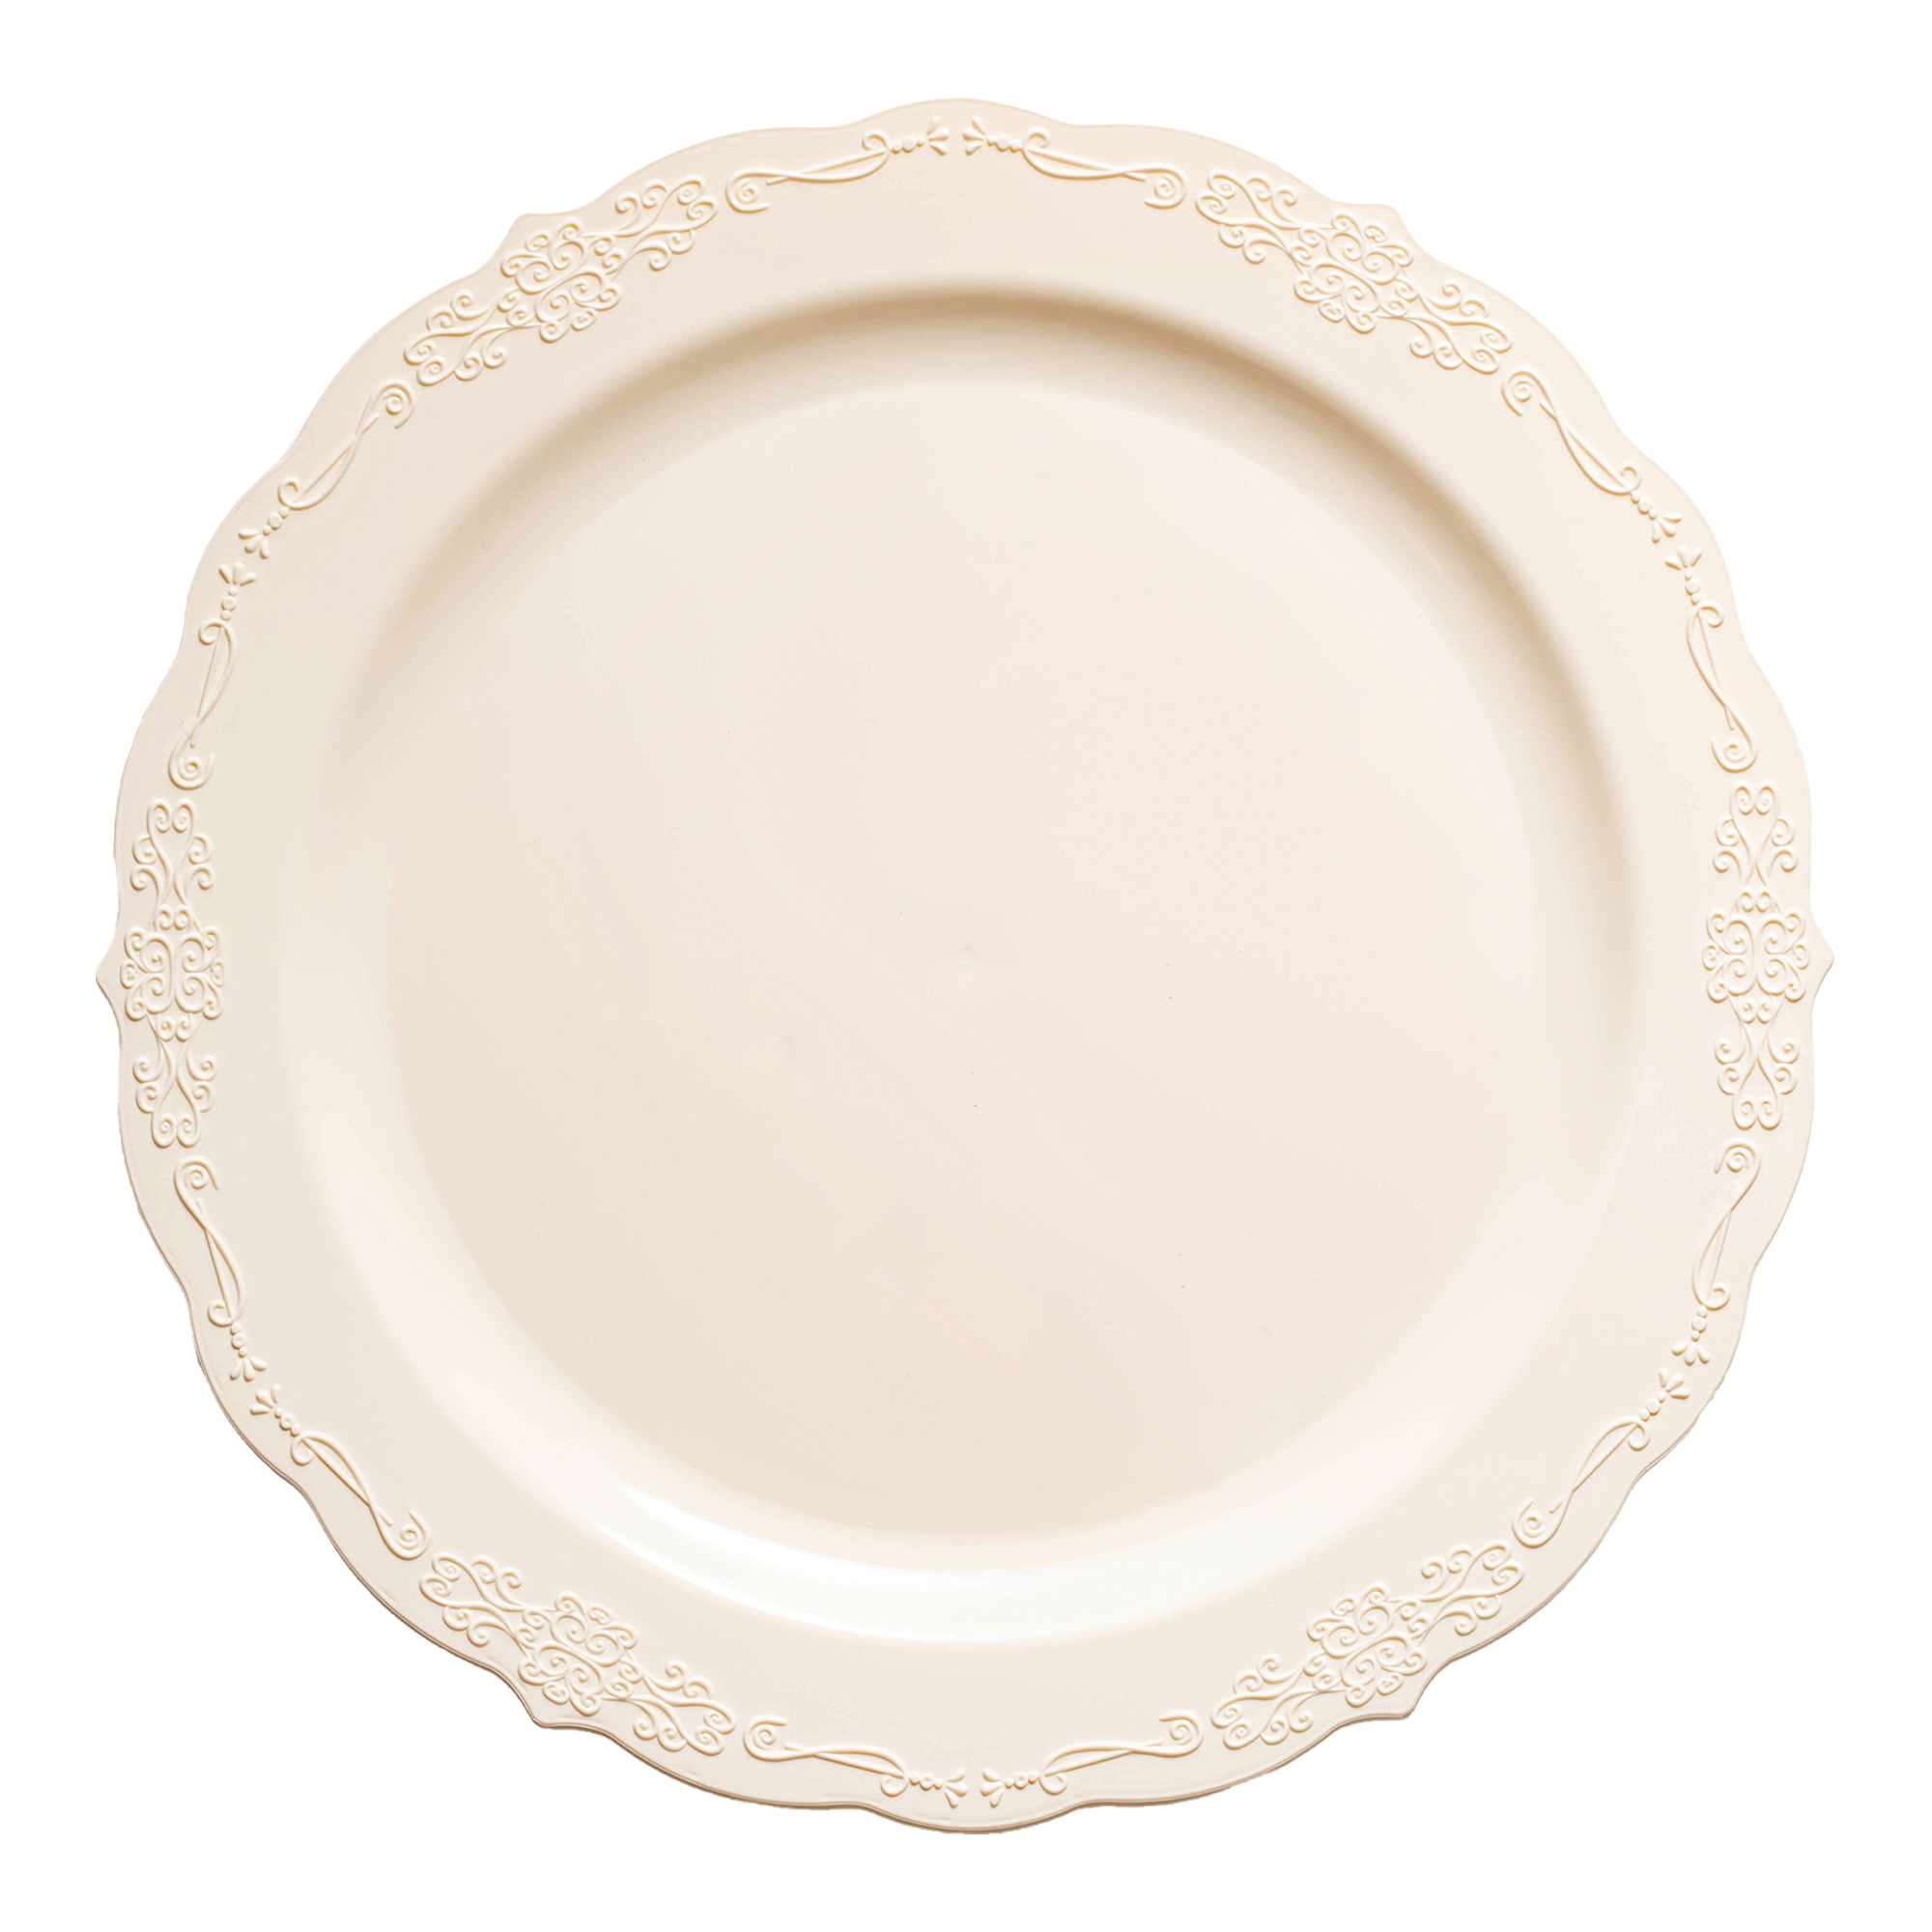 Best Deal for OIPYI 85Pcs Banquet Tableware Transparent Plastic Plate